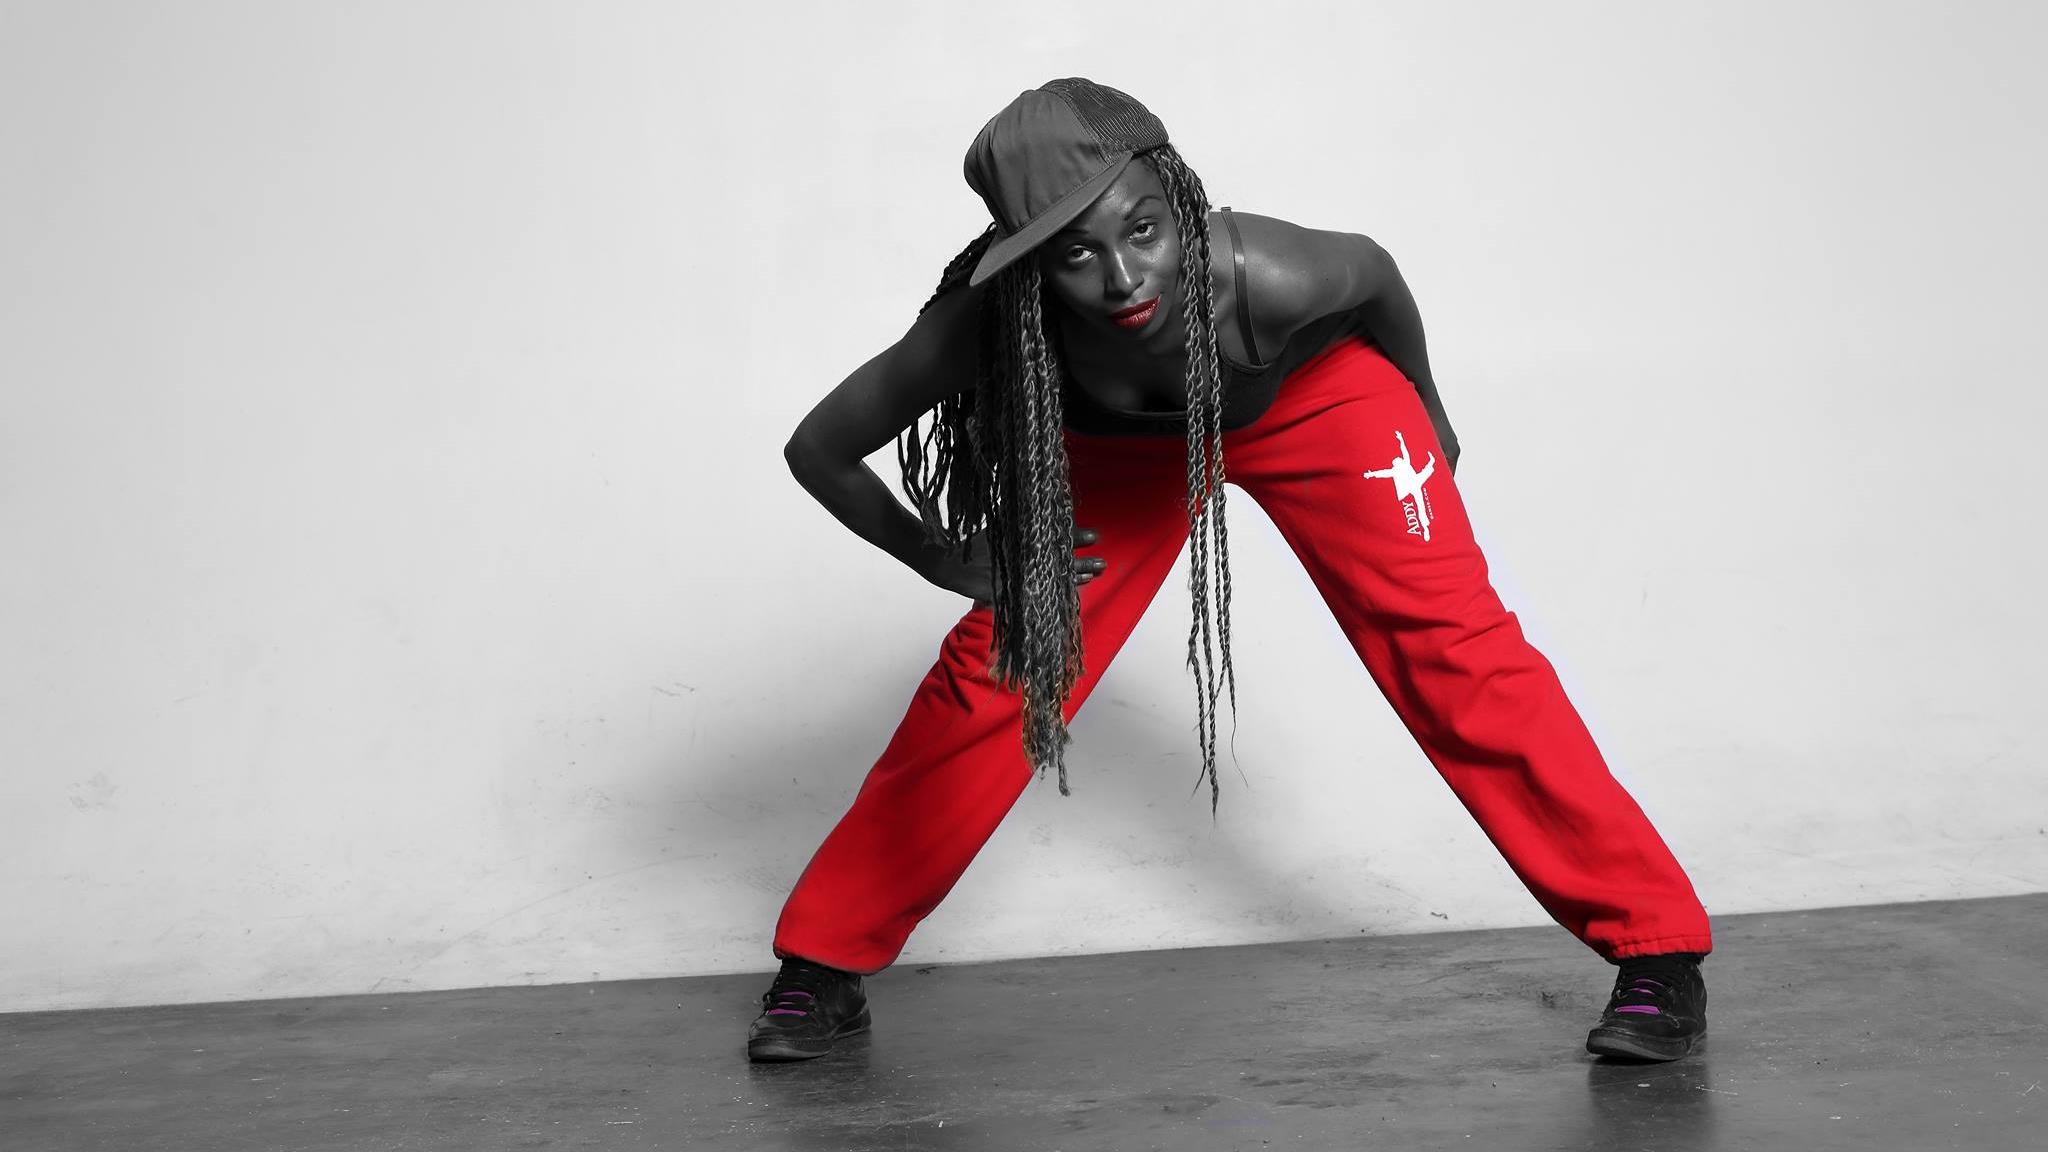 Popularisation de danses d'inspiration africaine sur les réseaux sociaux
Popularisation de danses d'inspiration africaine sur les réseaux sociaux